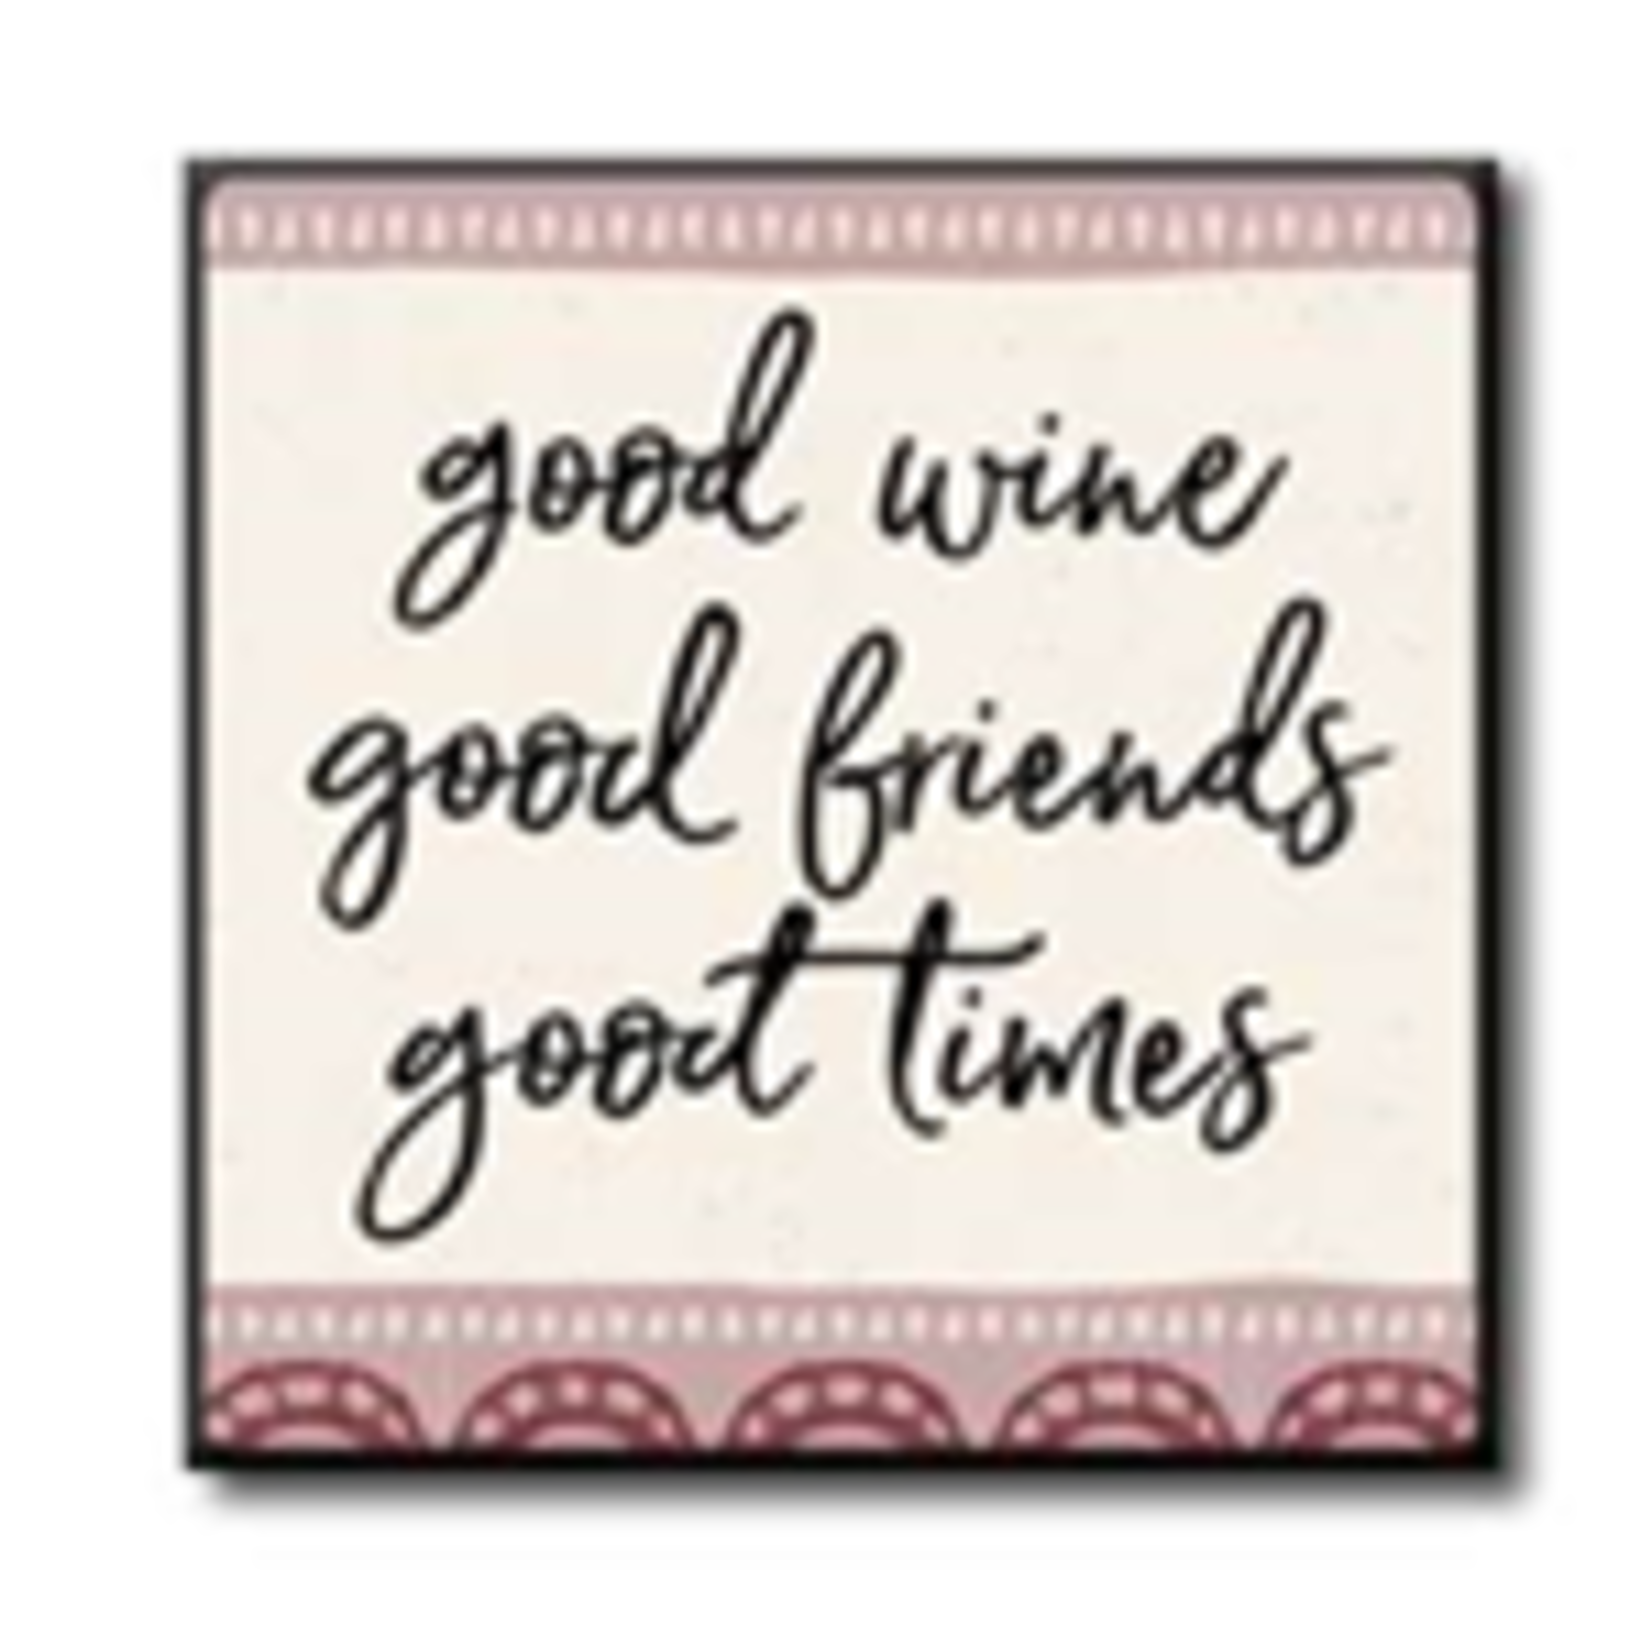 Good Wine Good Friends Good Times 4x4